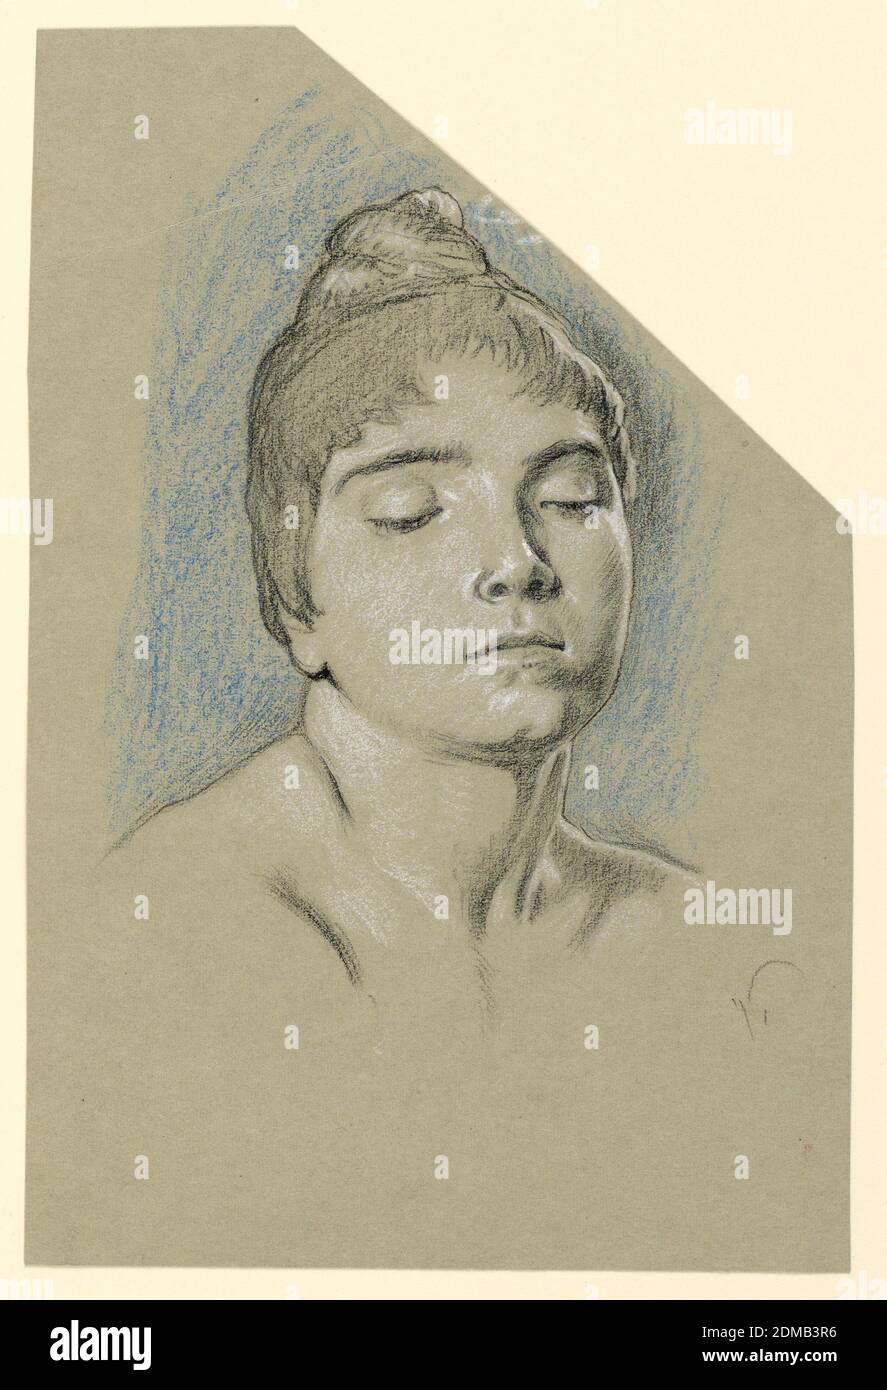 Portrait croquis d'une jeune femme aux yeux fermés, Elihu Vedder, américain, 1836 – 1923, noir, crayons bleus, craie blanche, sur papier gris, tête d'une jeune fille, tourné vers la droite en vue de trois quarts. Sa tête est légèrement inclinée, son regard vers le bas à droite. Ses cheveux sont formés avec un nœud sur sa tête. Signature initiale, en bas à droite: 'V.', USA, ca. 1885, portraits, dessin Banque D'Images